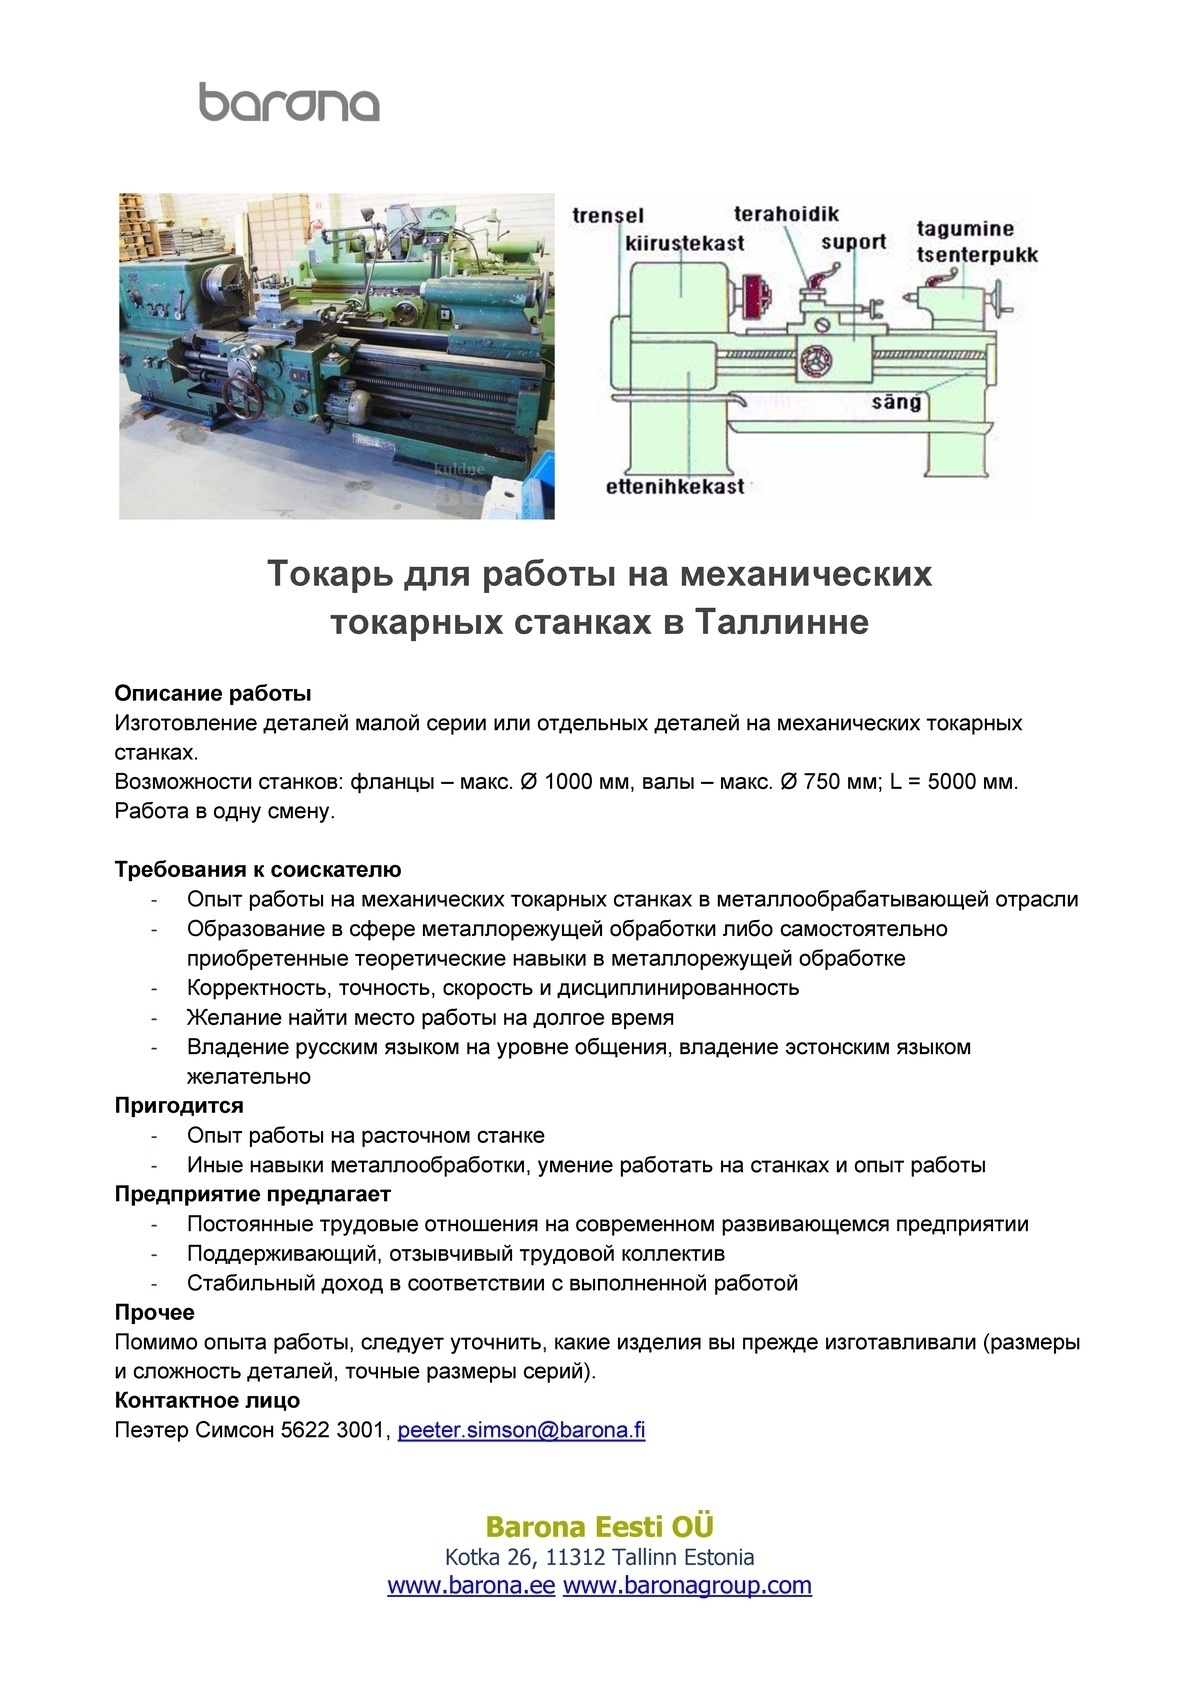 Barona Eesti OÜ Токарь для работы на механических токарных станках в Таллинне